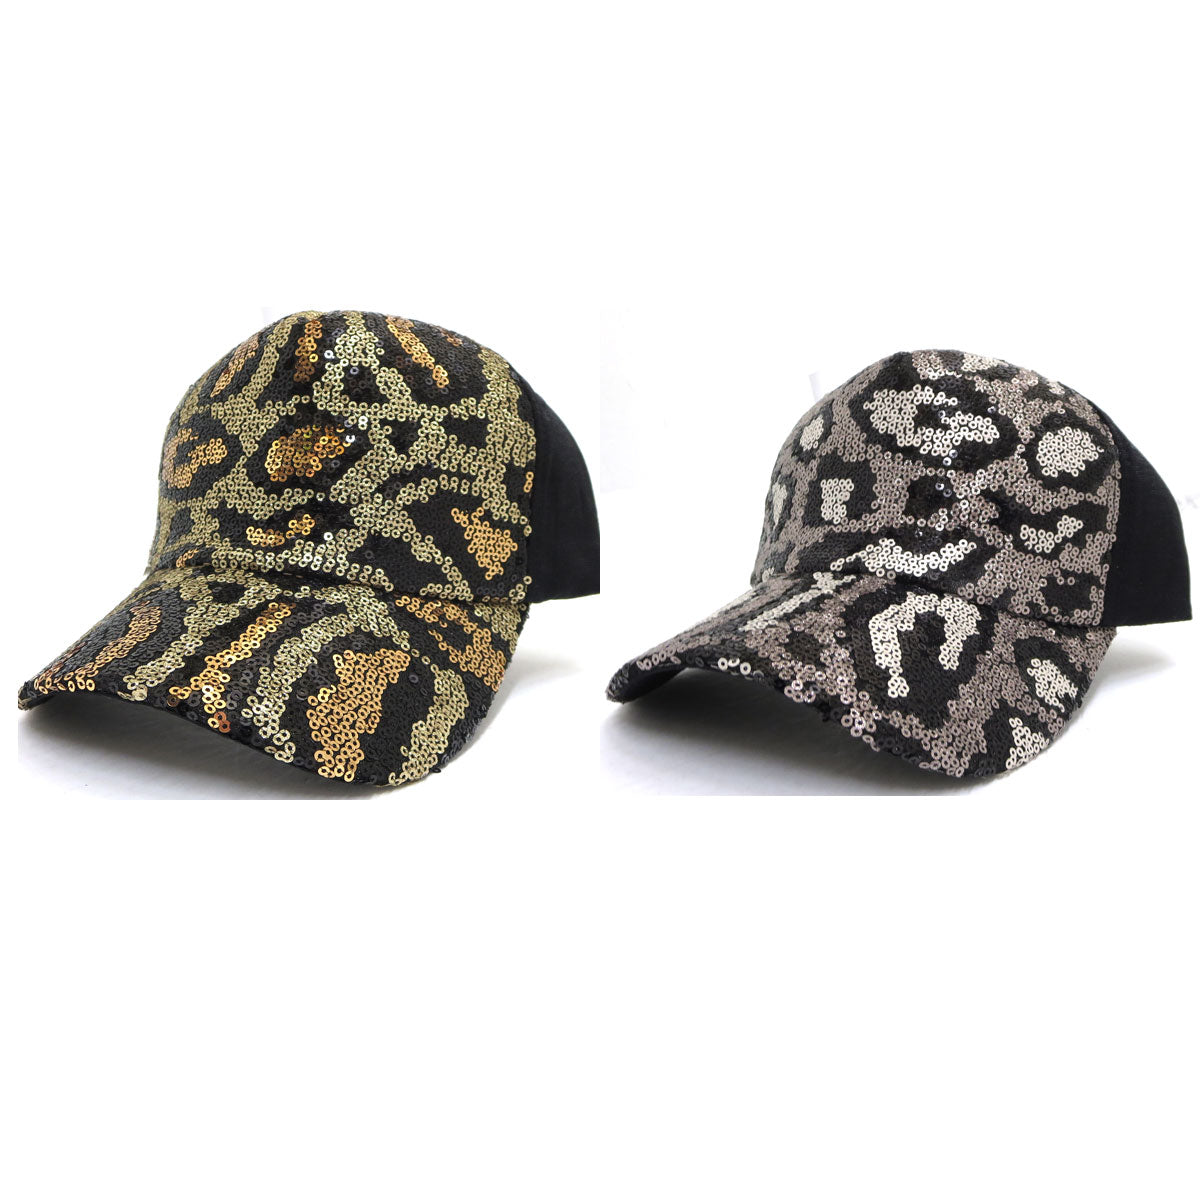 Cheetah Print Sparkly Cap